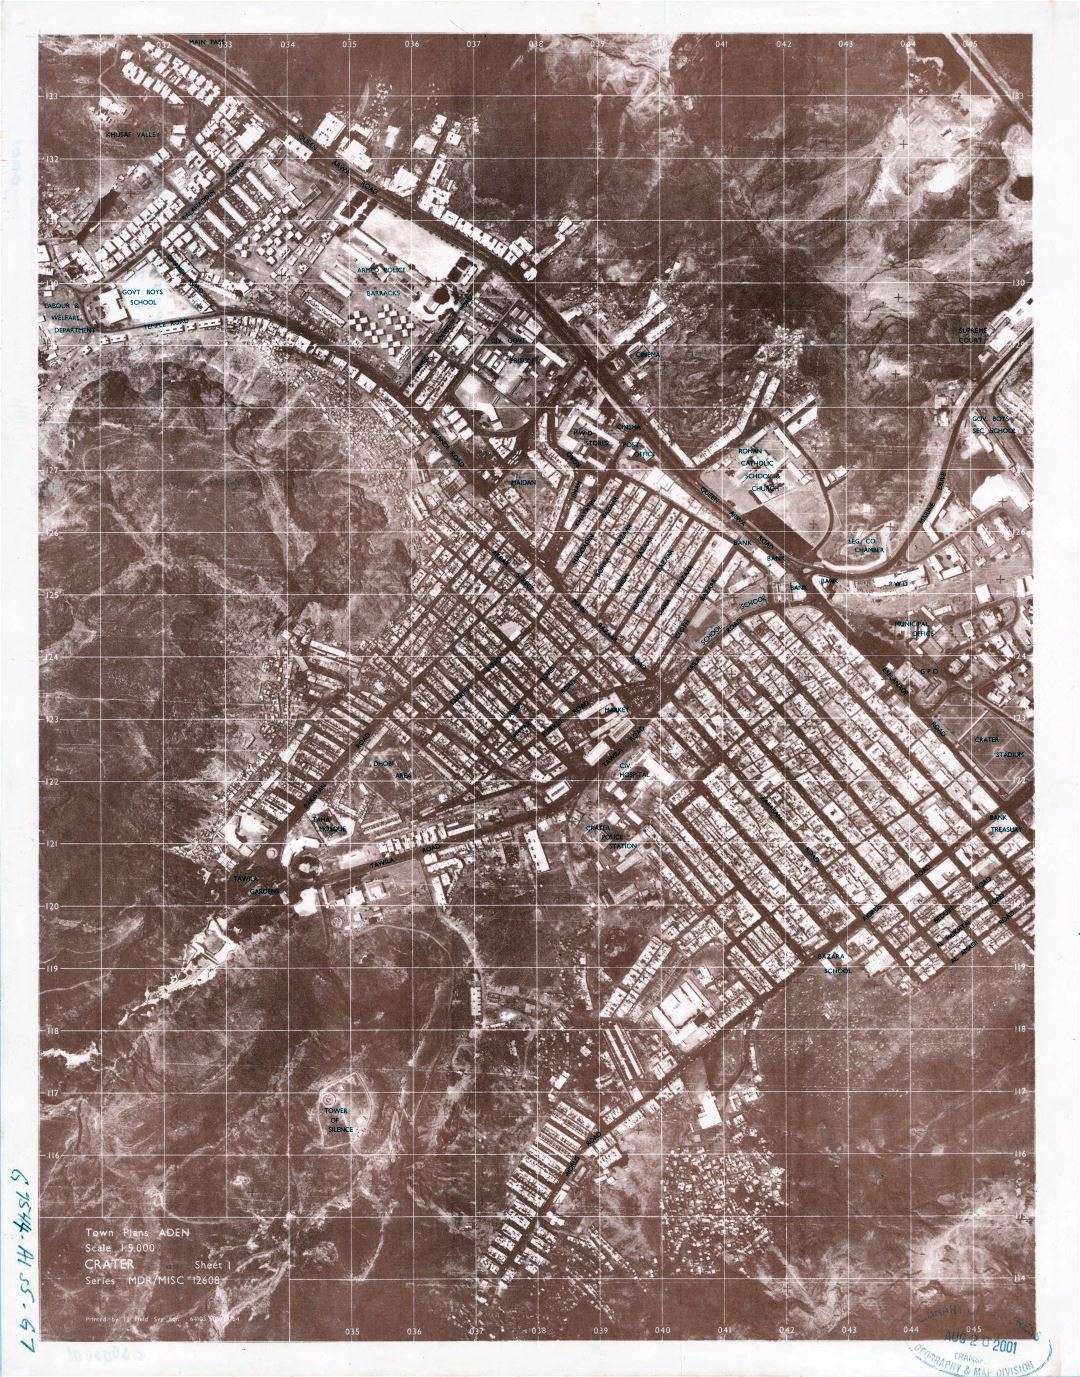 Grande detallado mapa de Adén - 1964